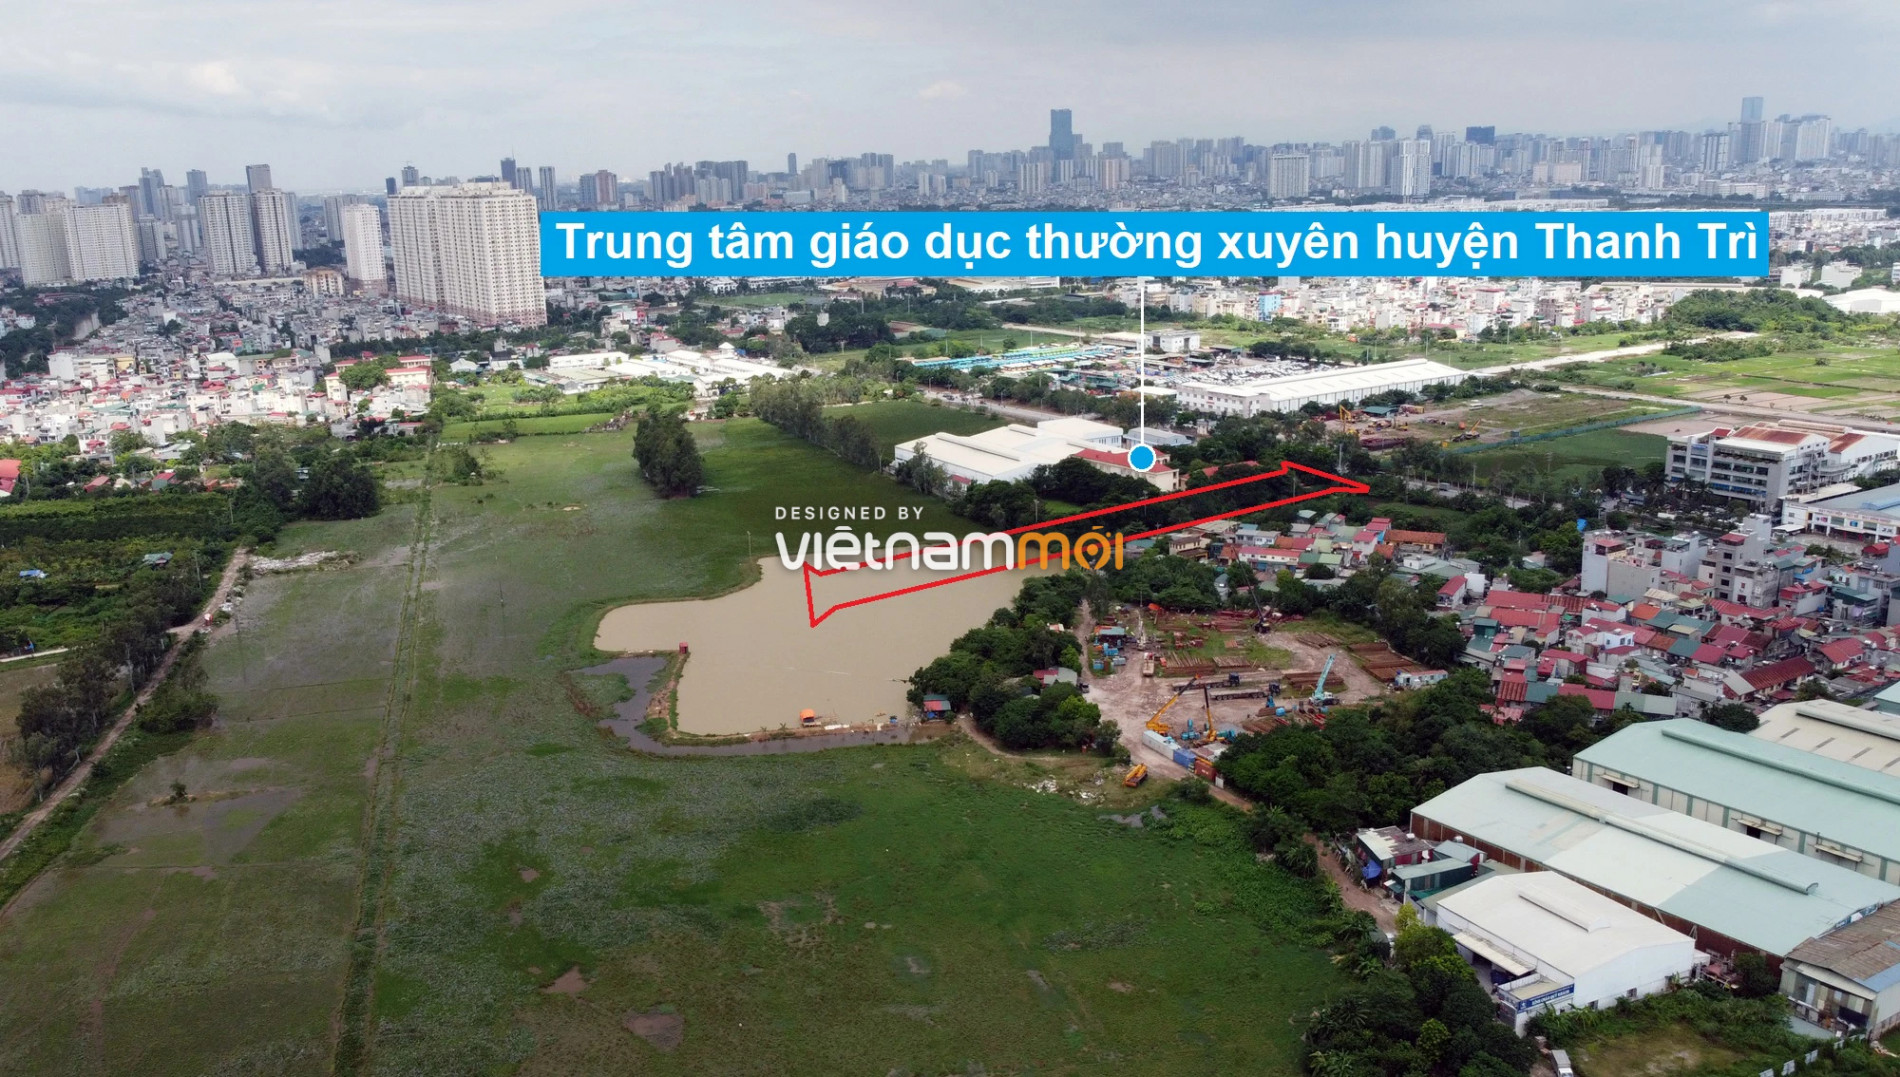 Những khu đất sắp thu hồi để mở đường ở xã Thanh Liệt, Thanh Trì, Hà Nội (phần 6) - Ảnh 5.